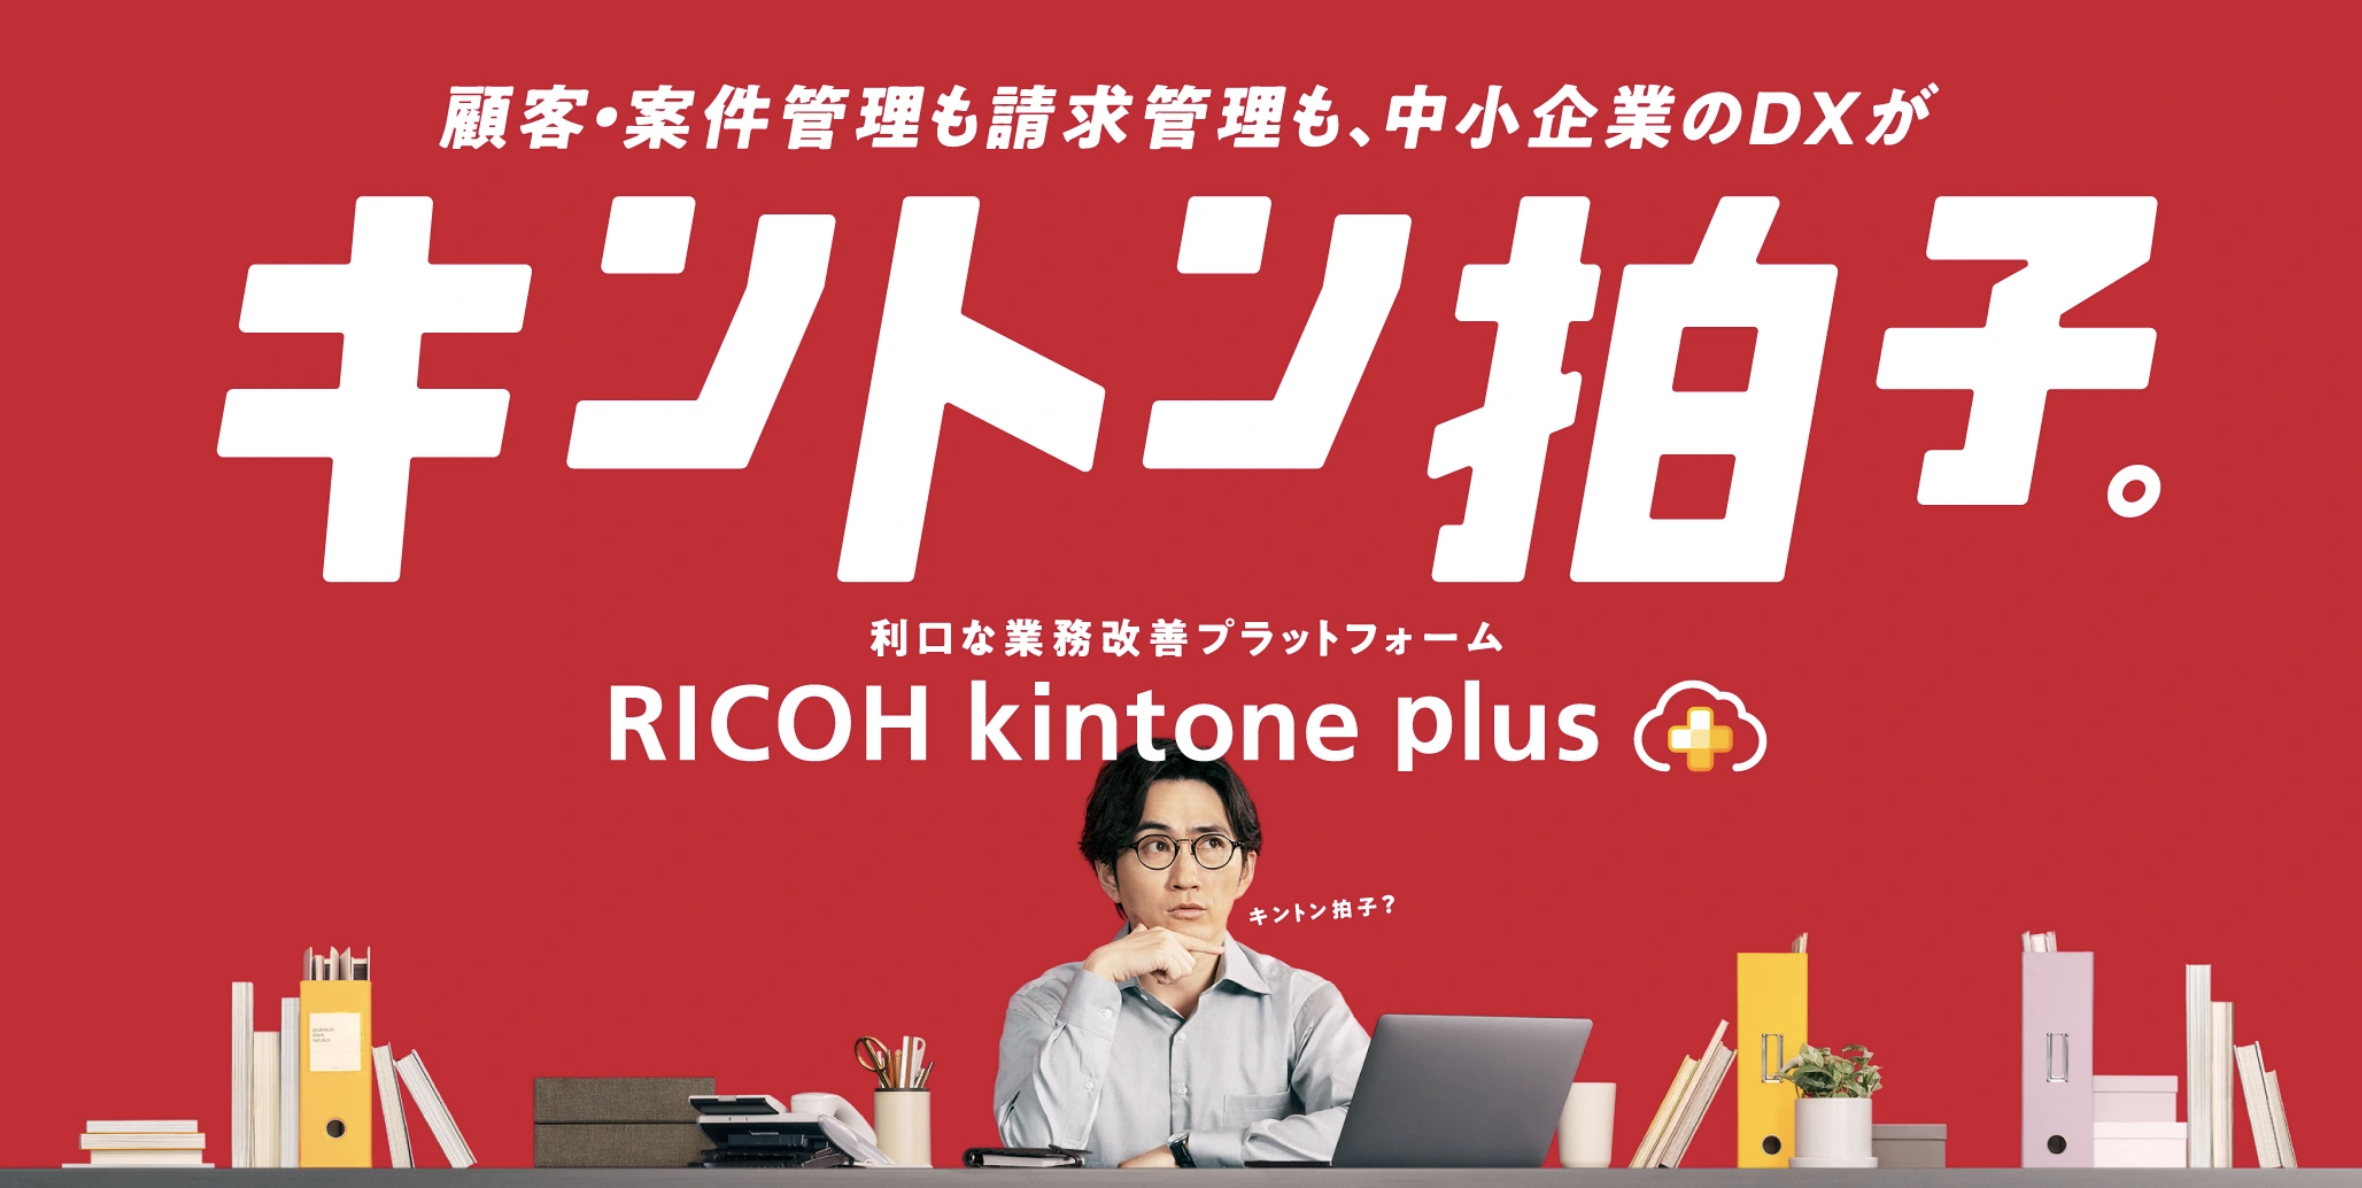 関連記事RICOH kintone plusへのリンクのサムネイル画像です。